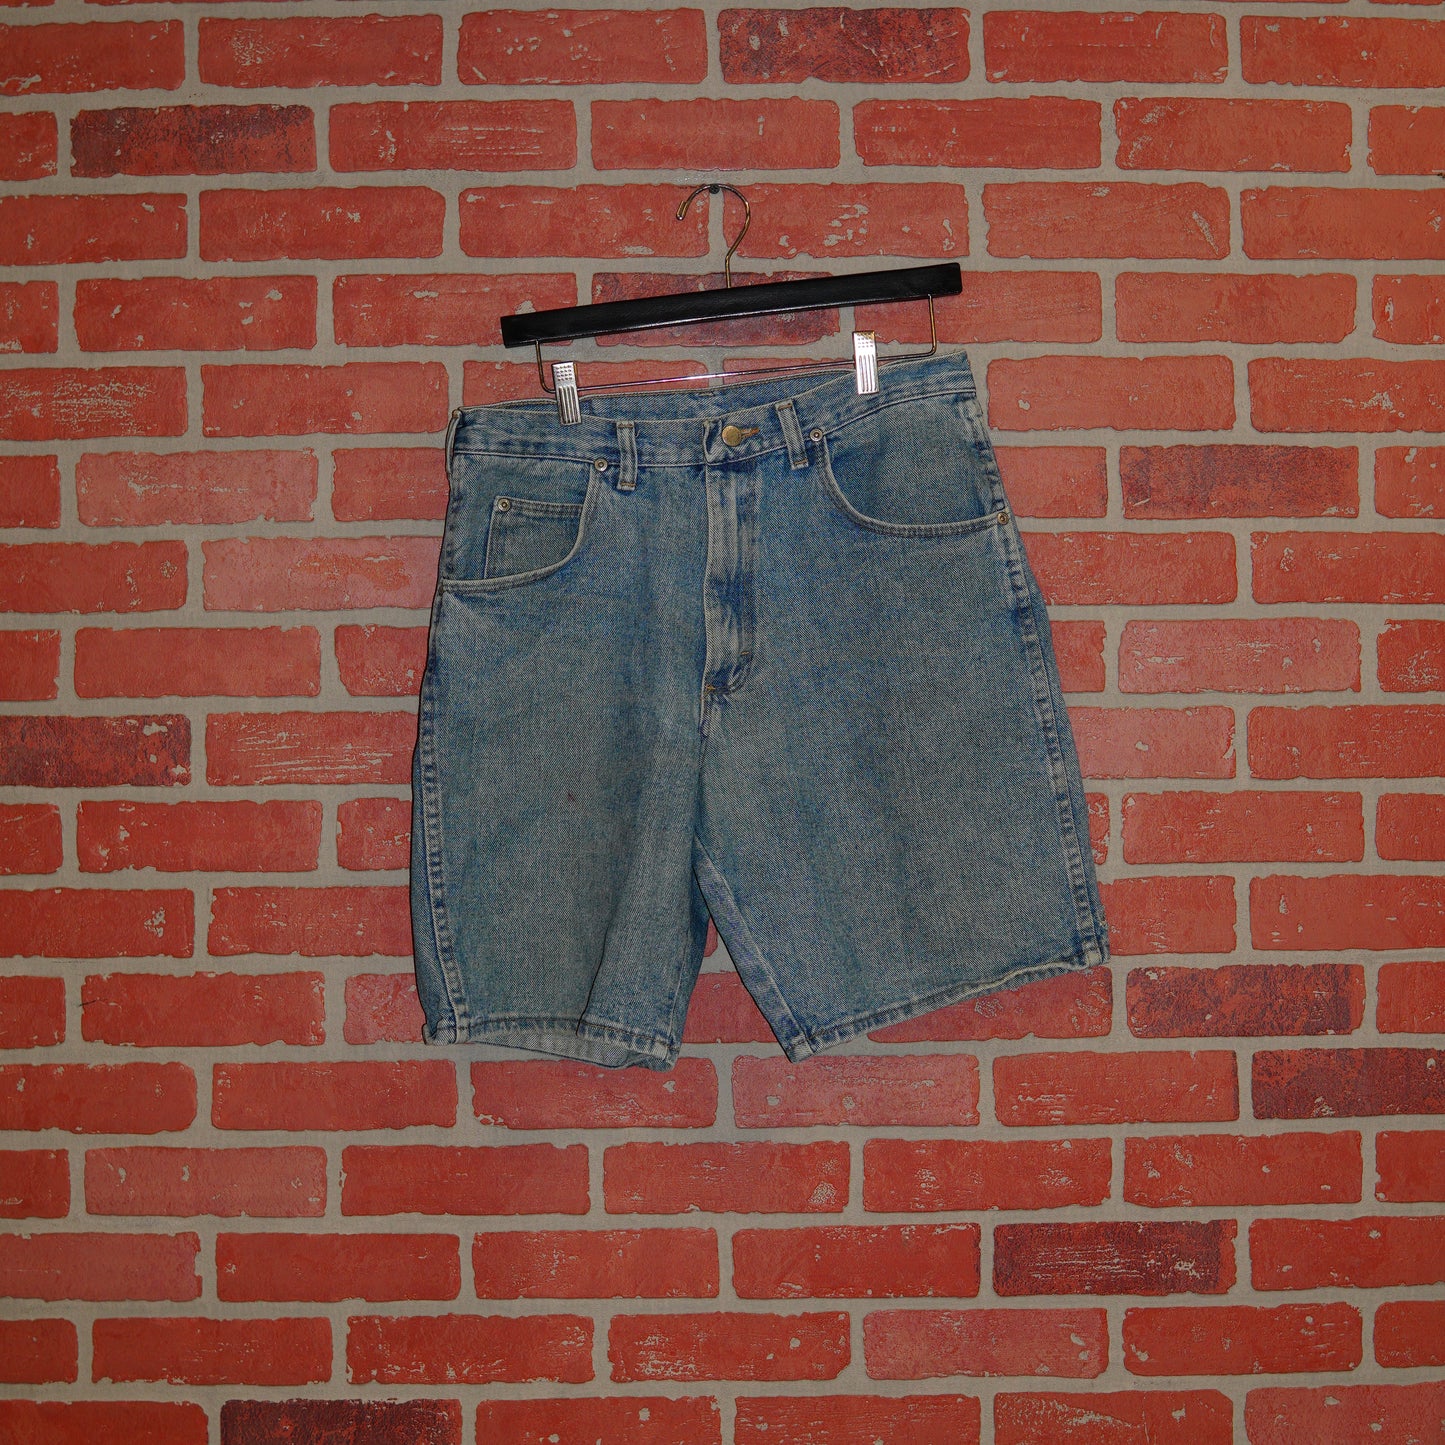 VTG Wrangler Silver Edition Jean Shorts